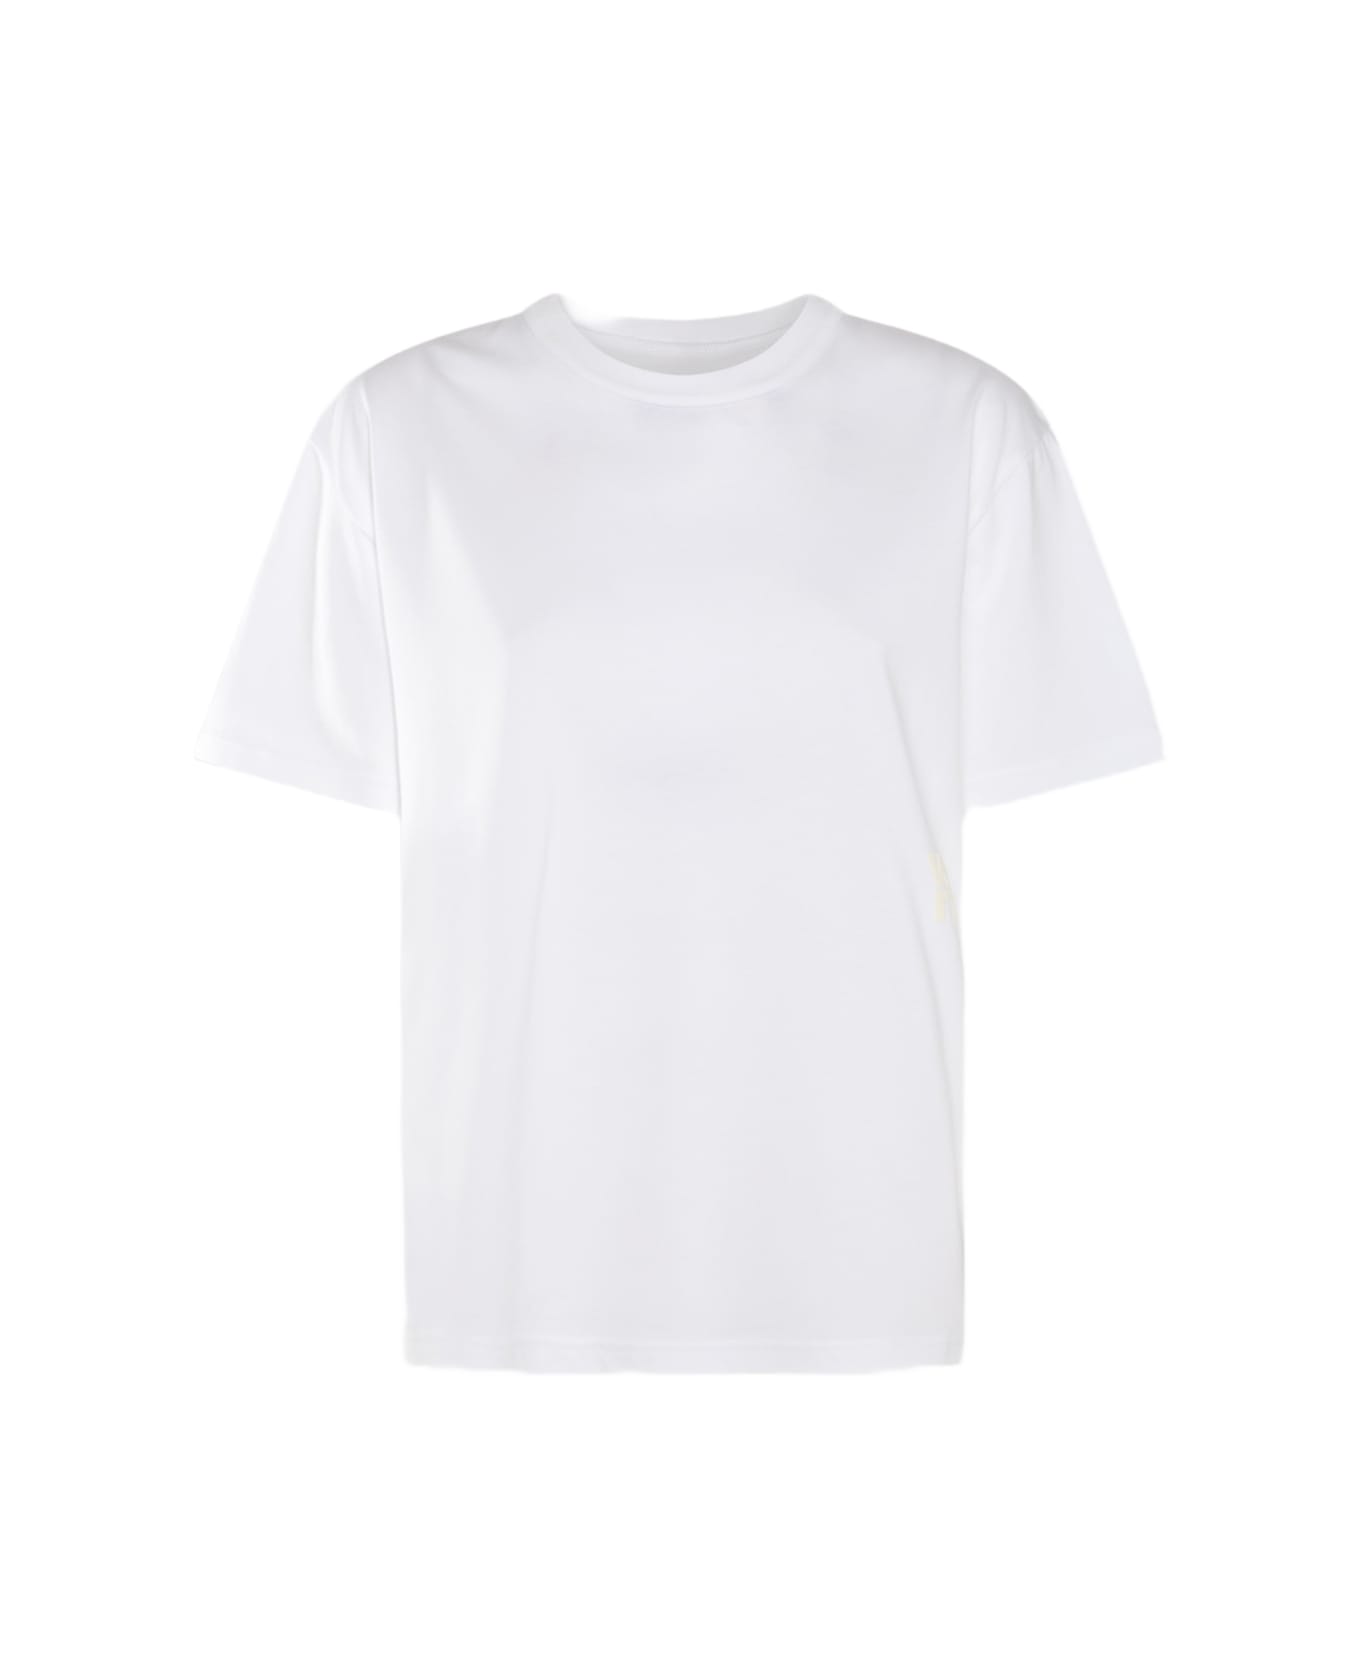 Alexander Wang White Cotton T-shirt - White